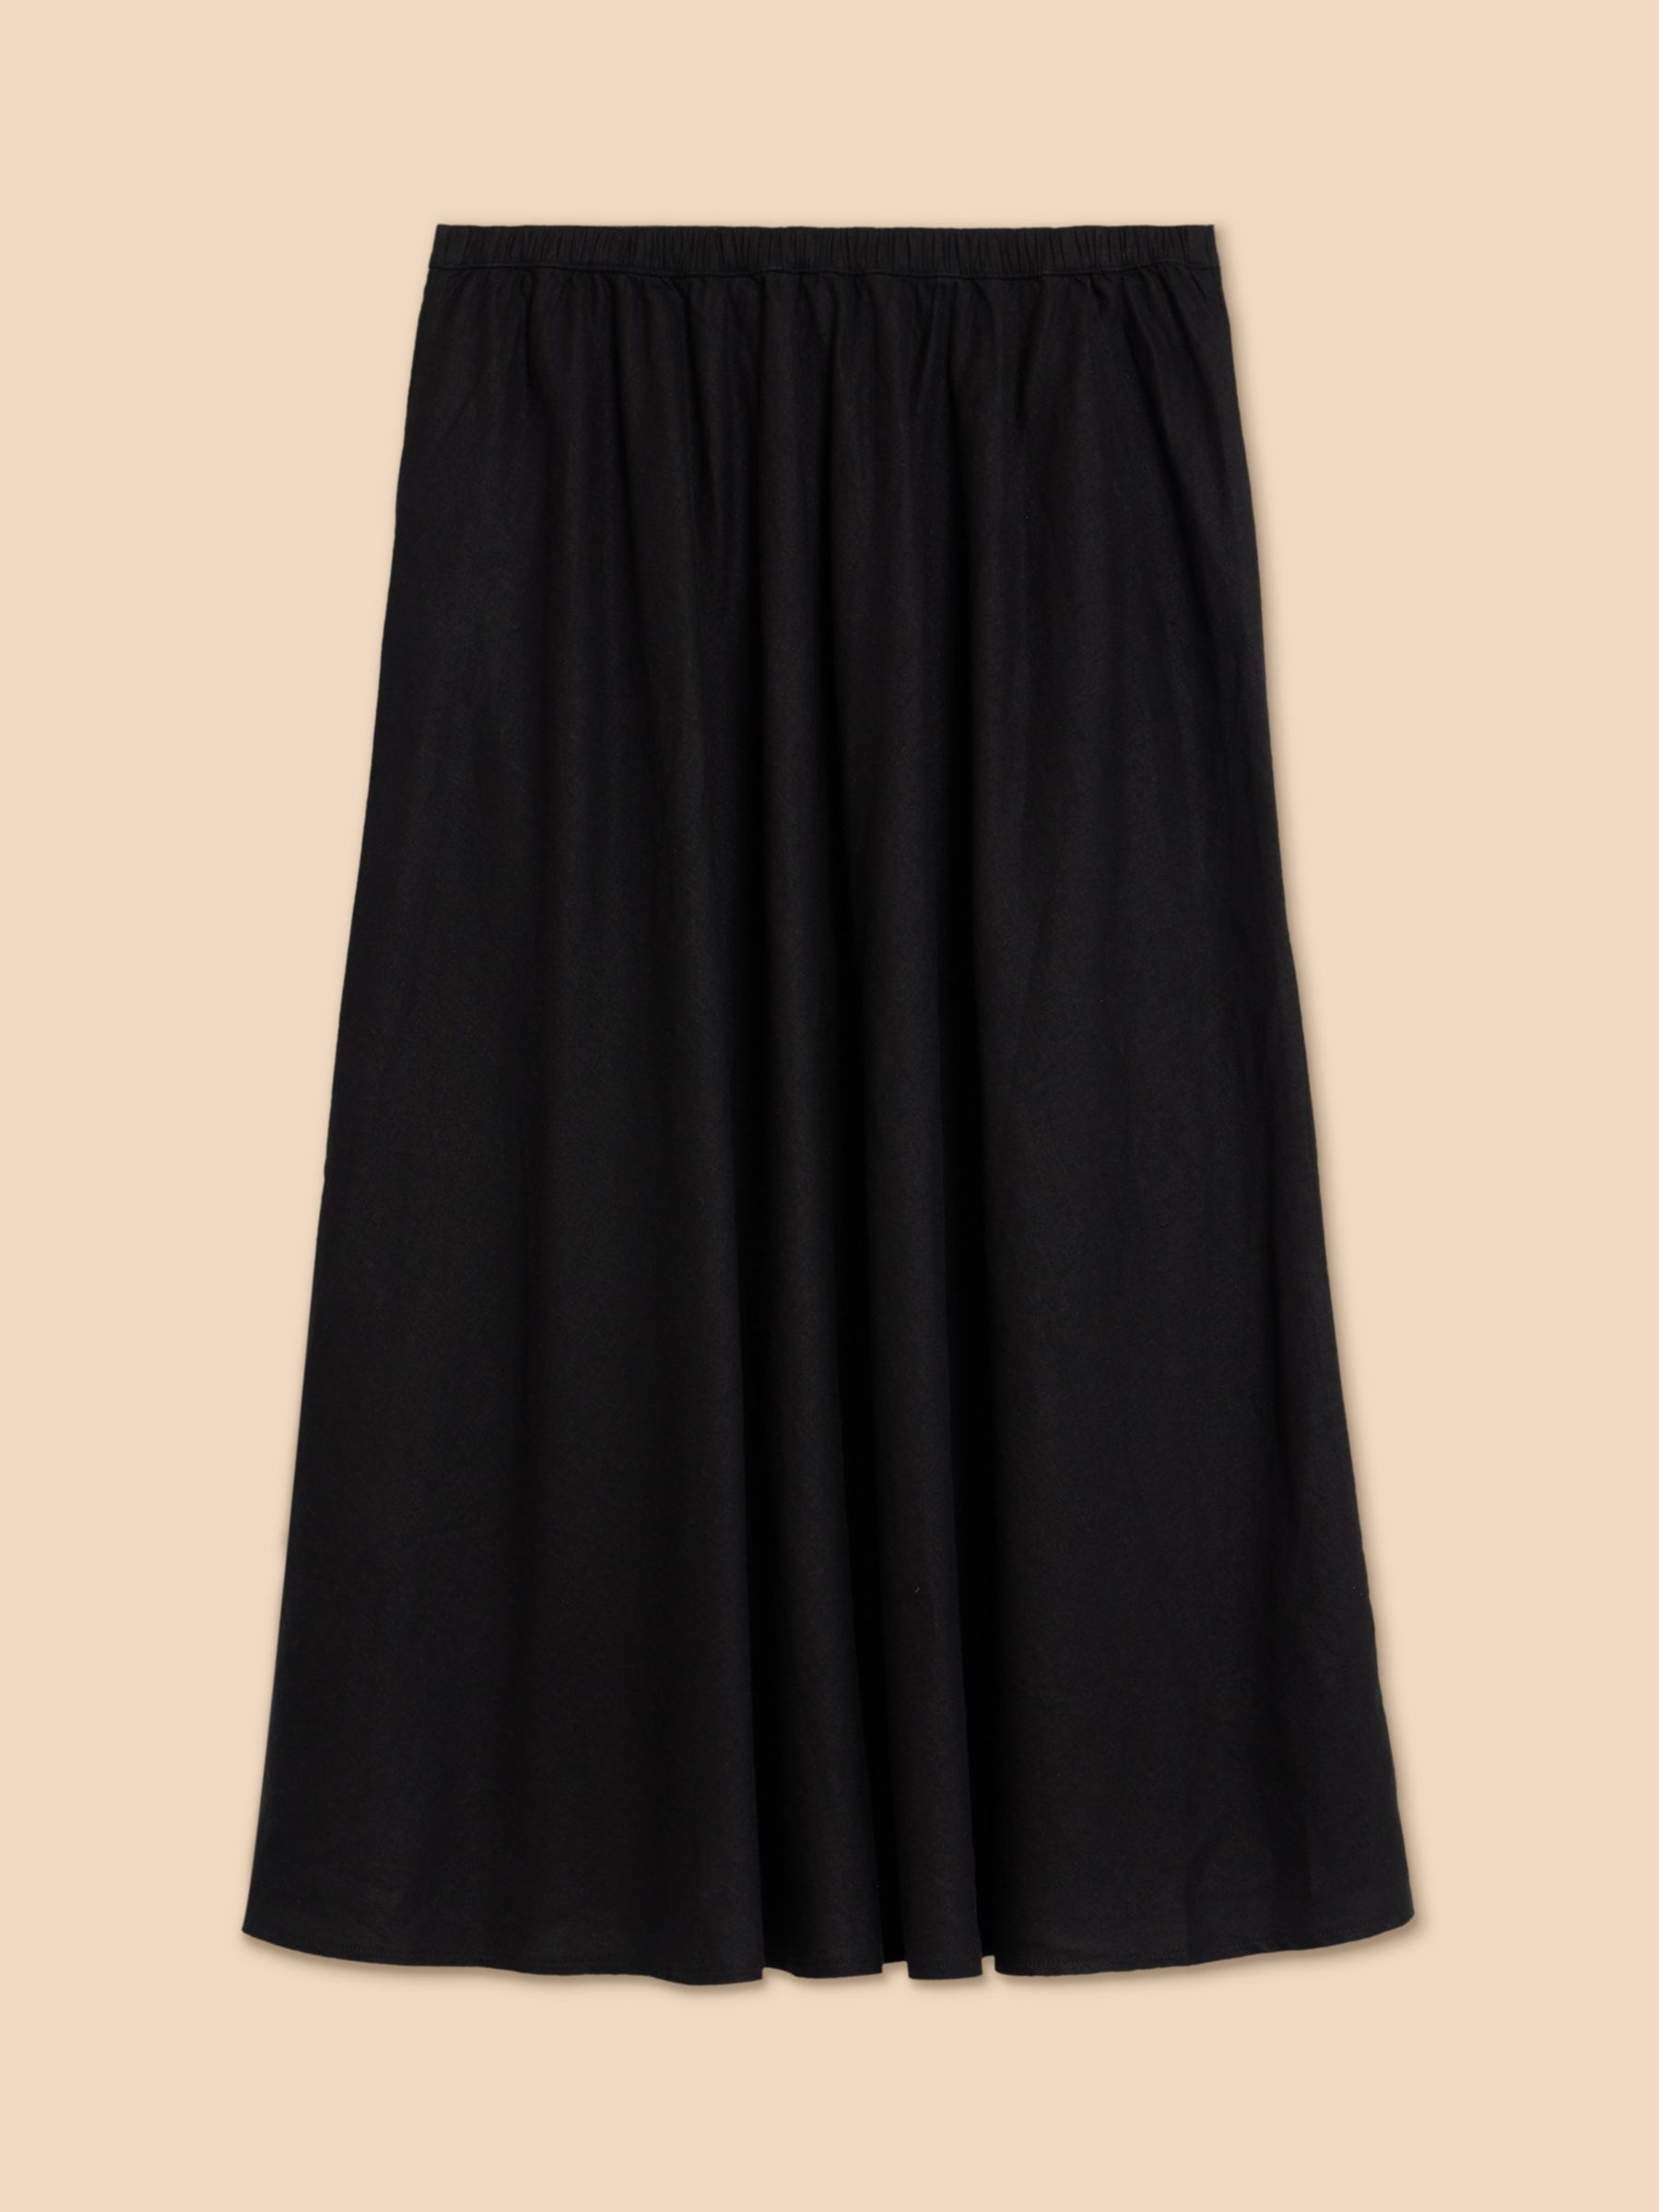 Buy White Stuff Clemence Linen Blend Skirt, Black Online at johnlewis.com